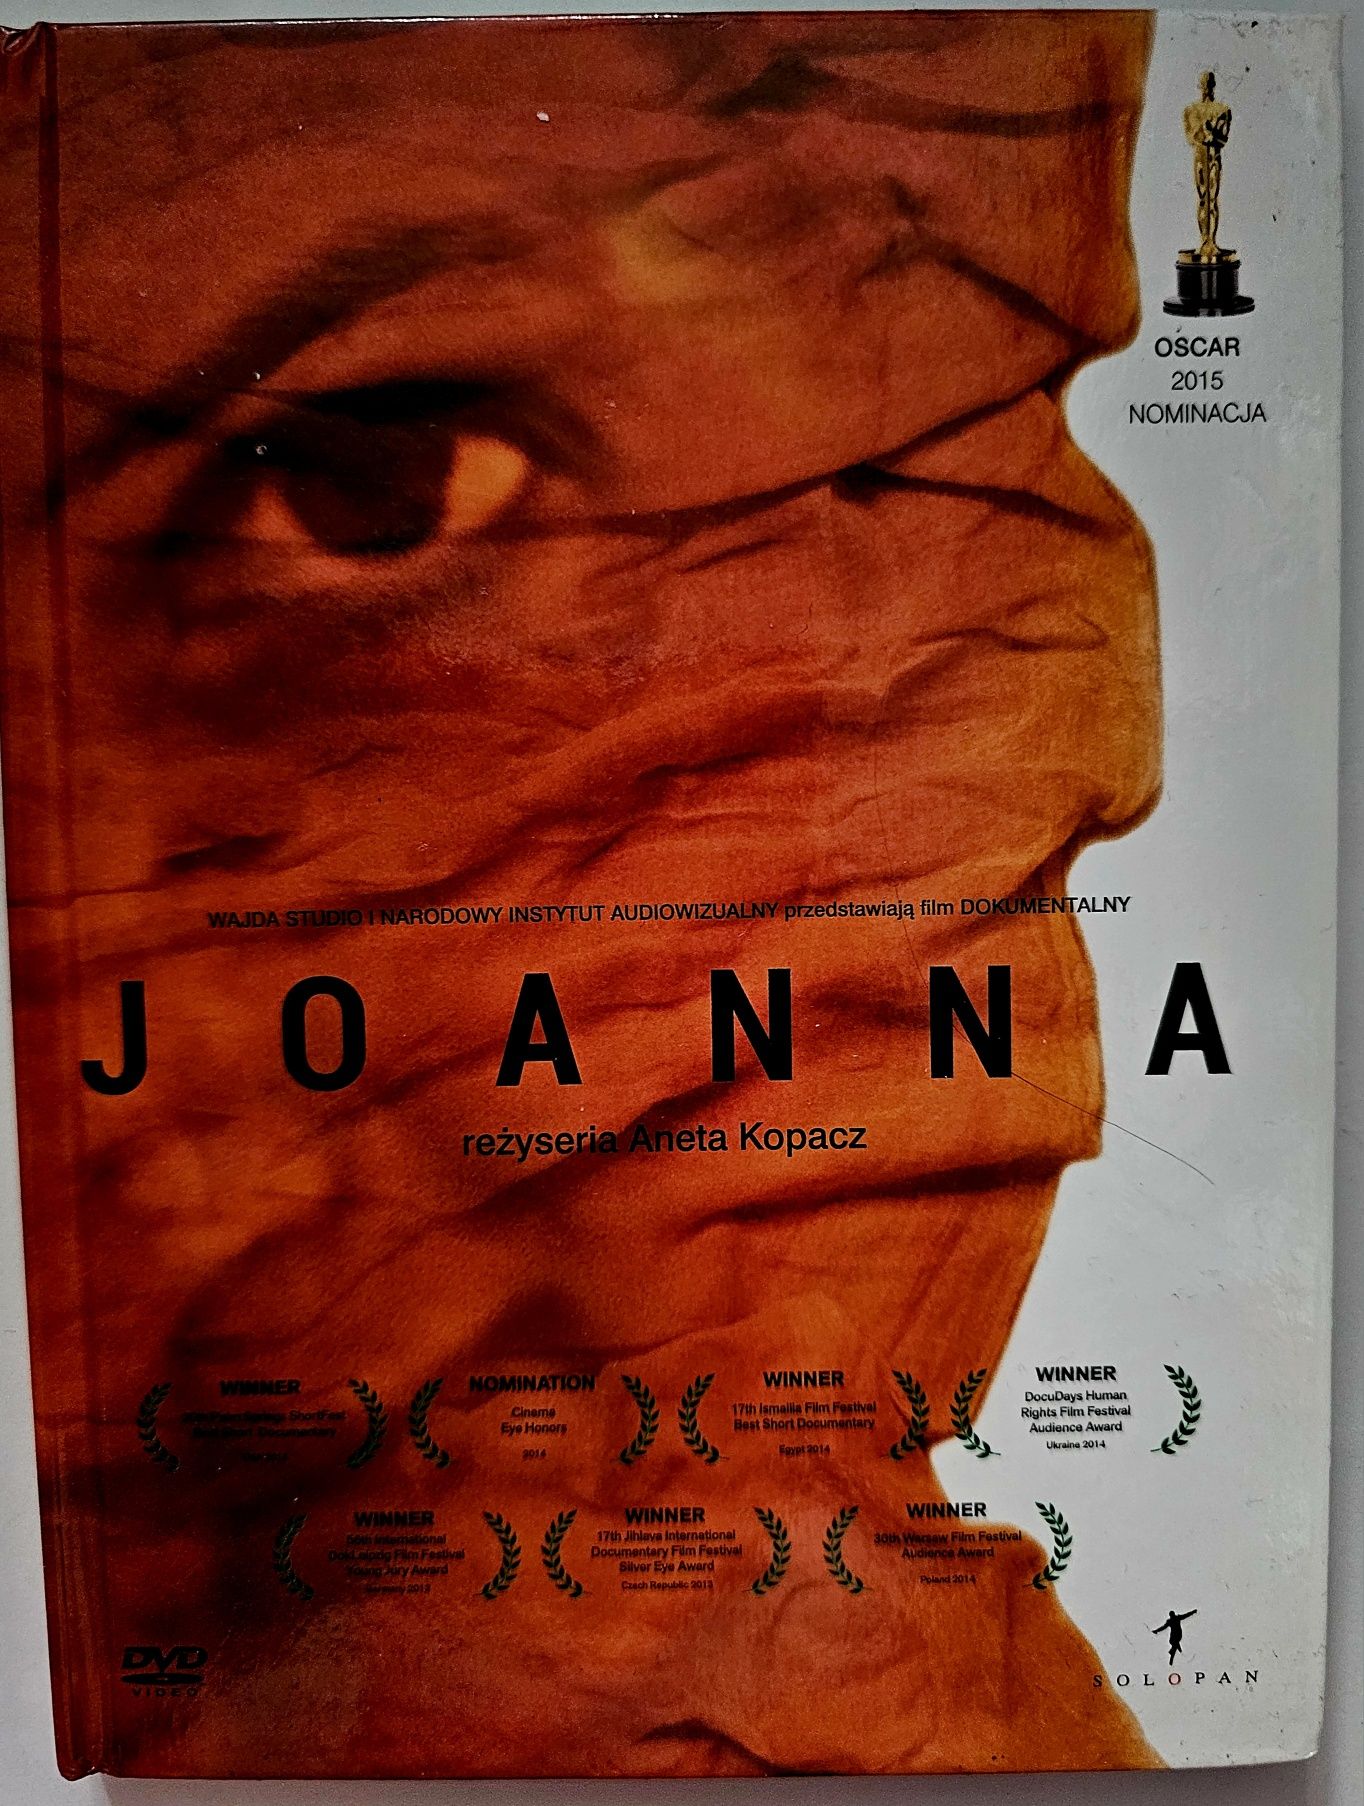 Joanna film dvd dokumentalny reż. Aneta Kopacz